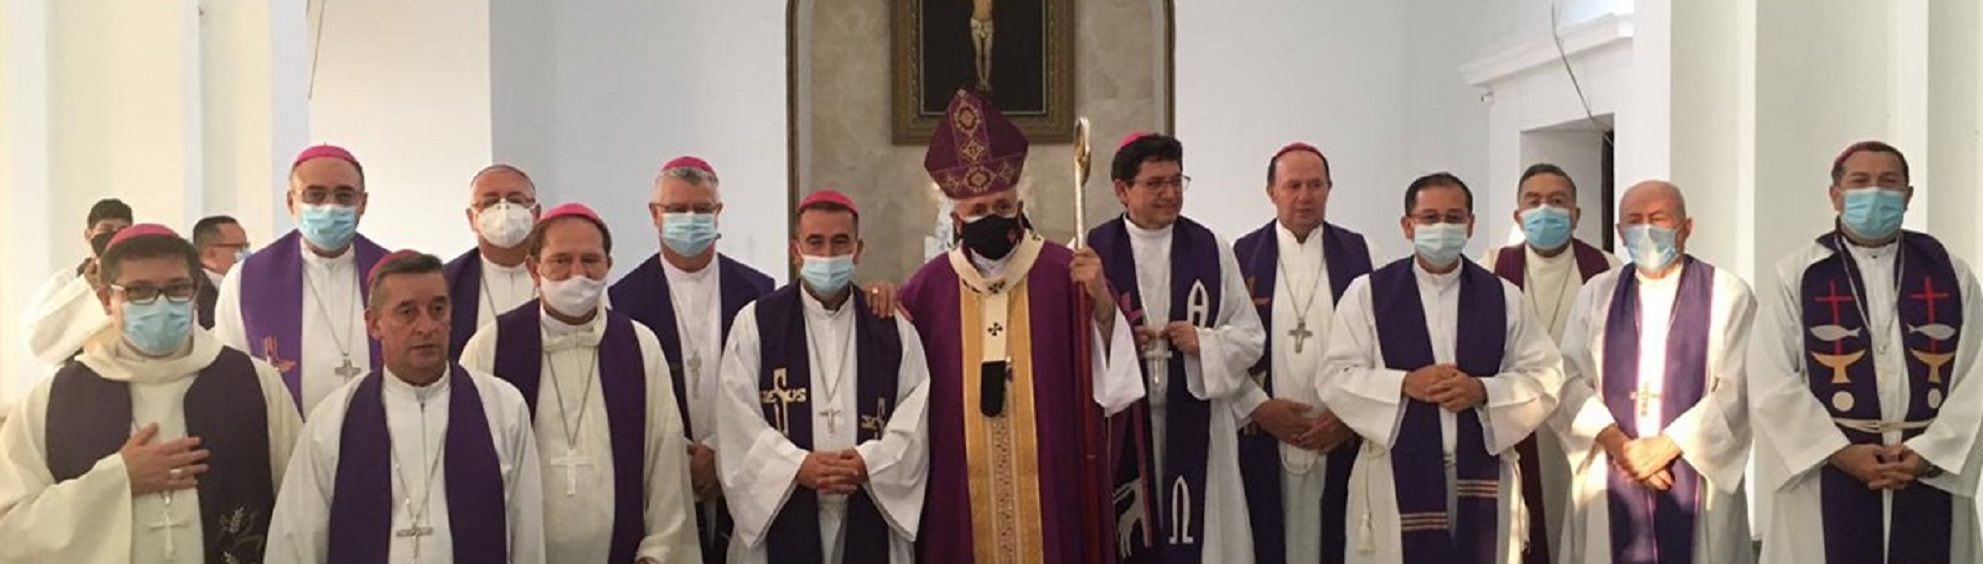 Conferencia Episcopal de Colombia rechaza el recrudecimiento de la violencia en el Pacífico colombiano. Foto: Conferencia Episcopal Colombia.